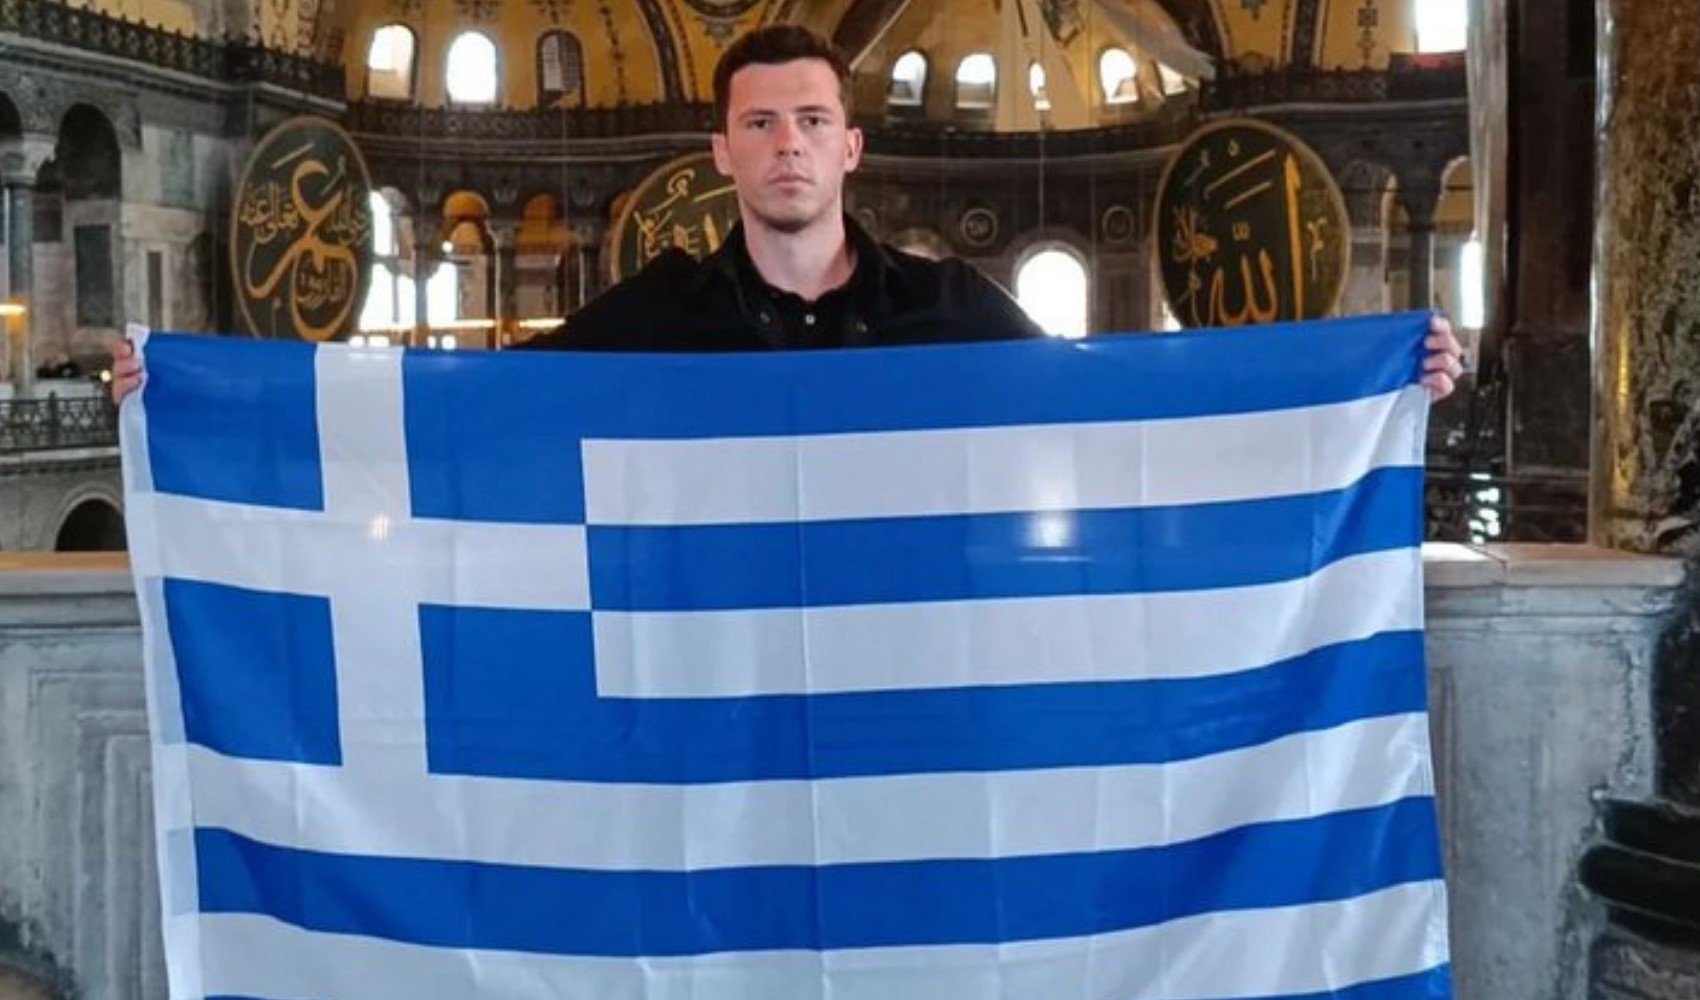 Yunan turist, Ayasofya'da Yunan bayrağıyla provokasyonda bulundu